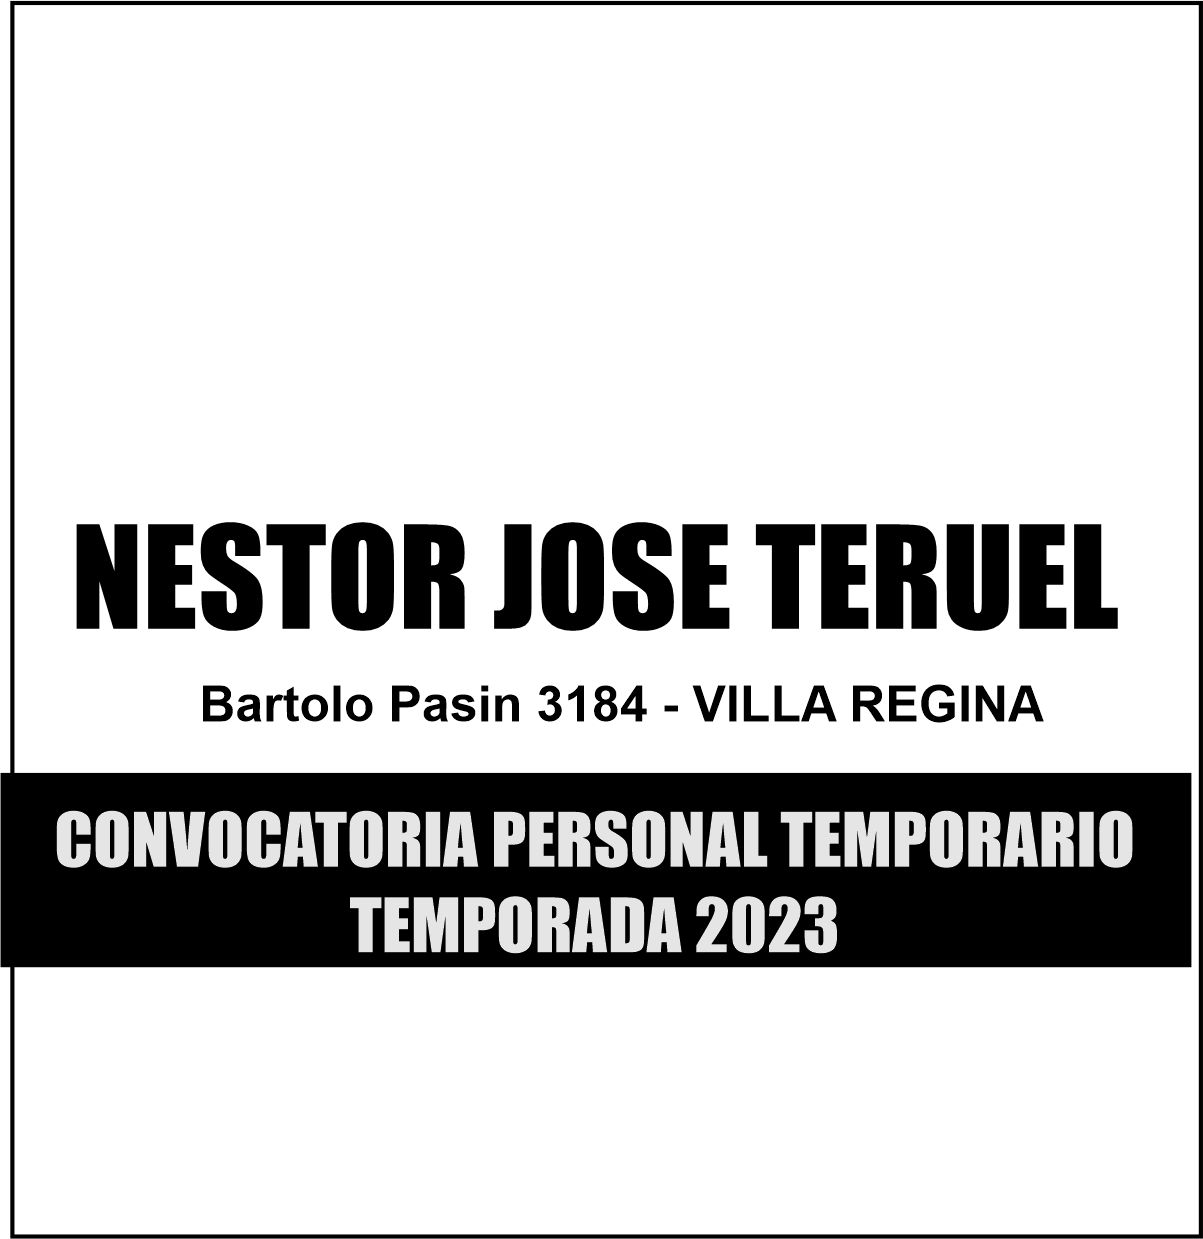 Convocatoria Personal Temporario 2023: Néstor José Teruel